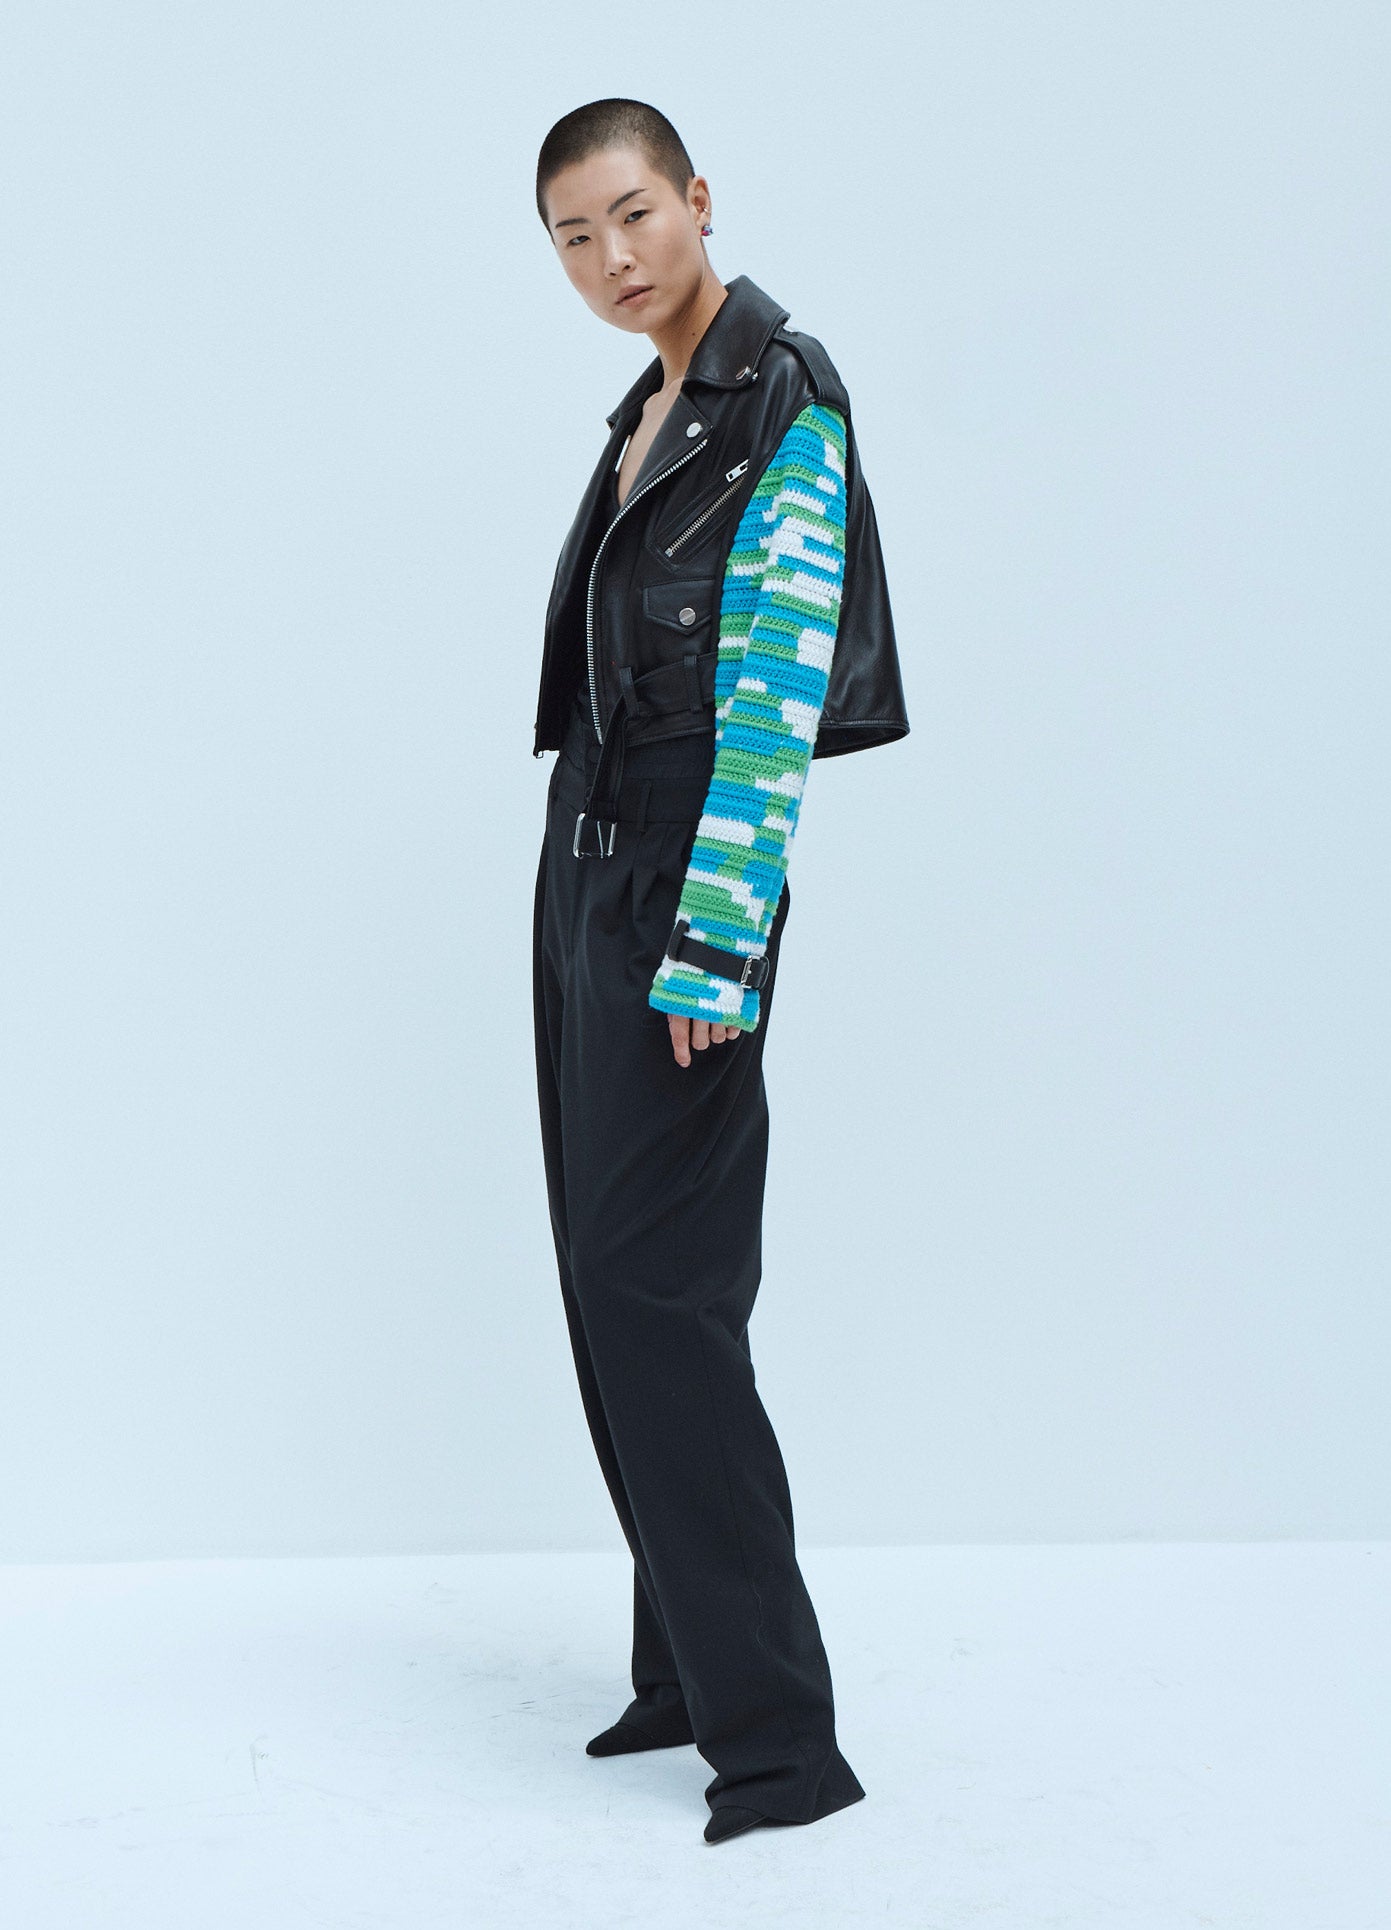 MONSE Crochet Sleeve Leather Jacket in Black Multi on Model Side View